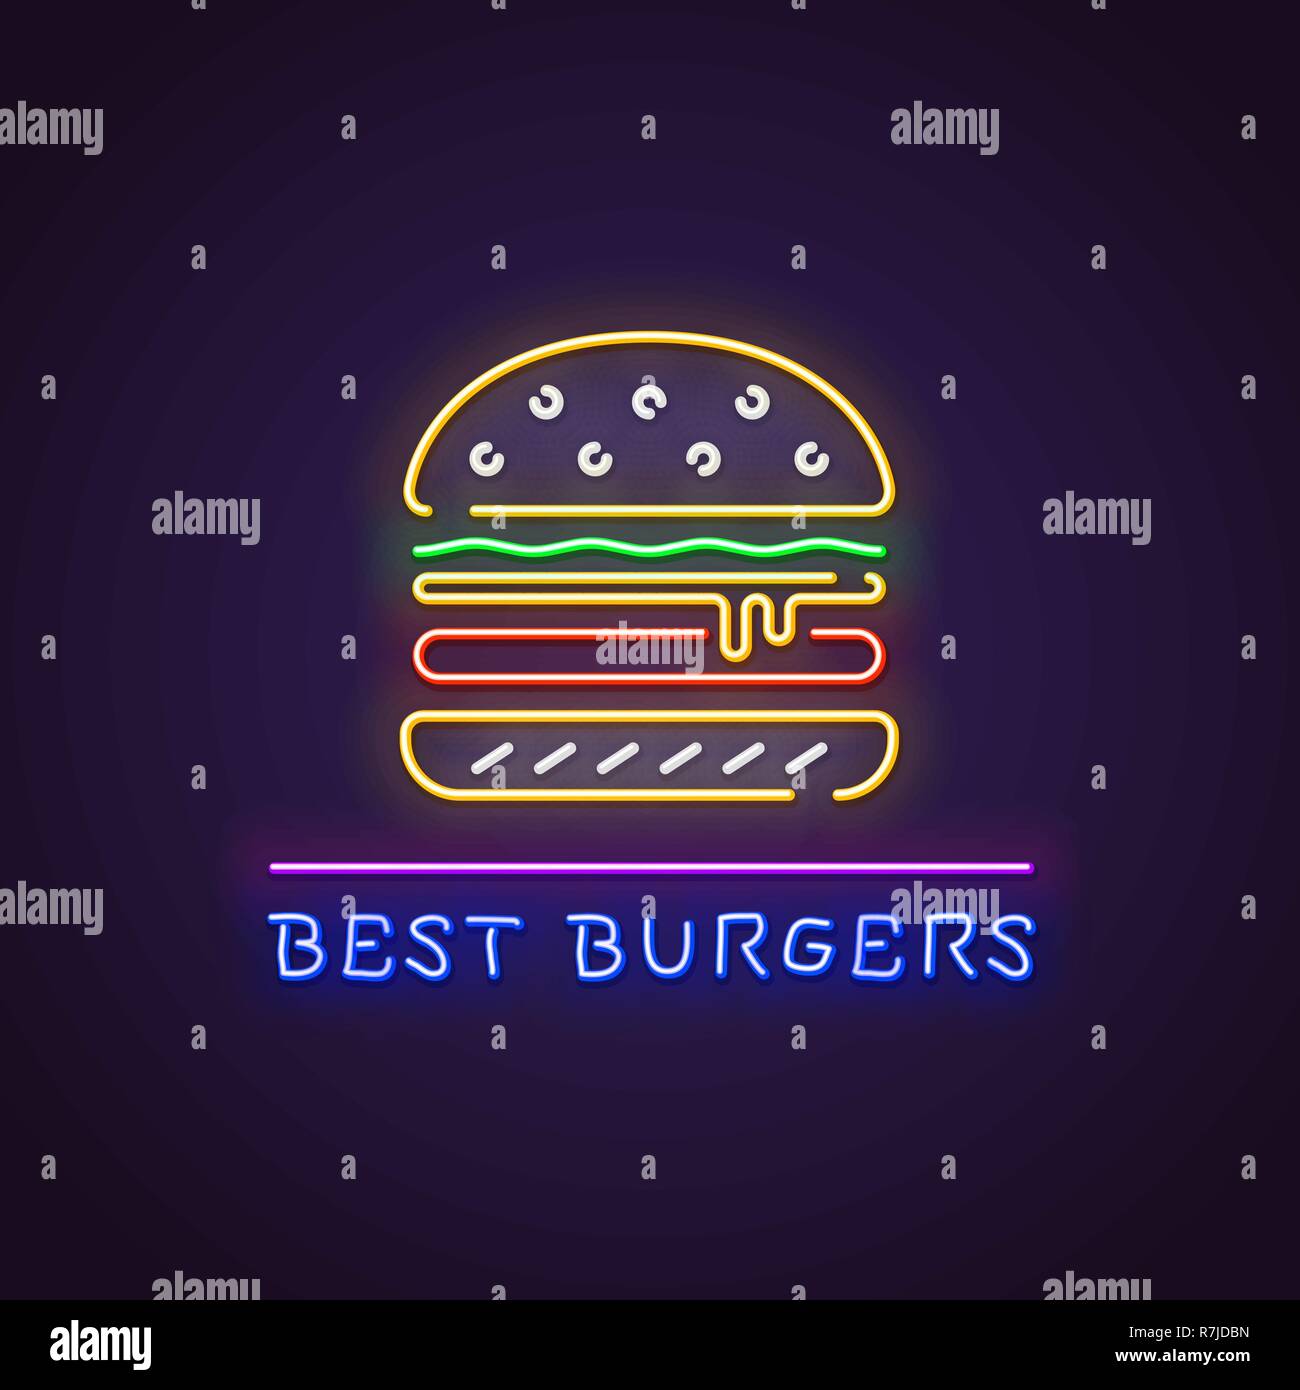 Hamburger insegna al neon. Neon incandescente segno di grande burger. migliori hamburger lettere incandescente in colori retrò. Un ristorante fast food concept. Illustrazione Vettoriale